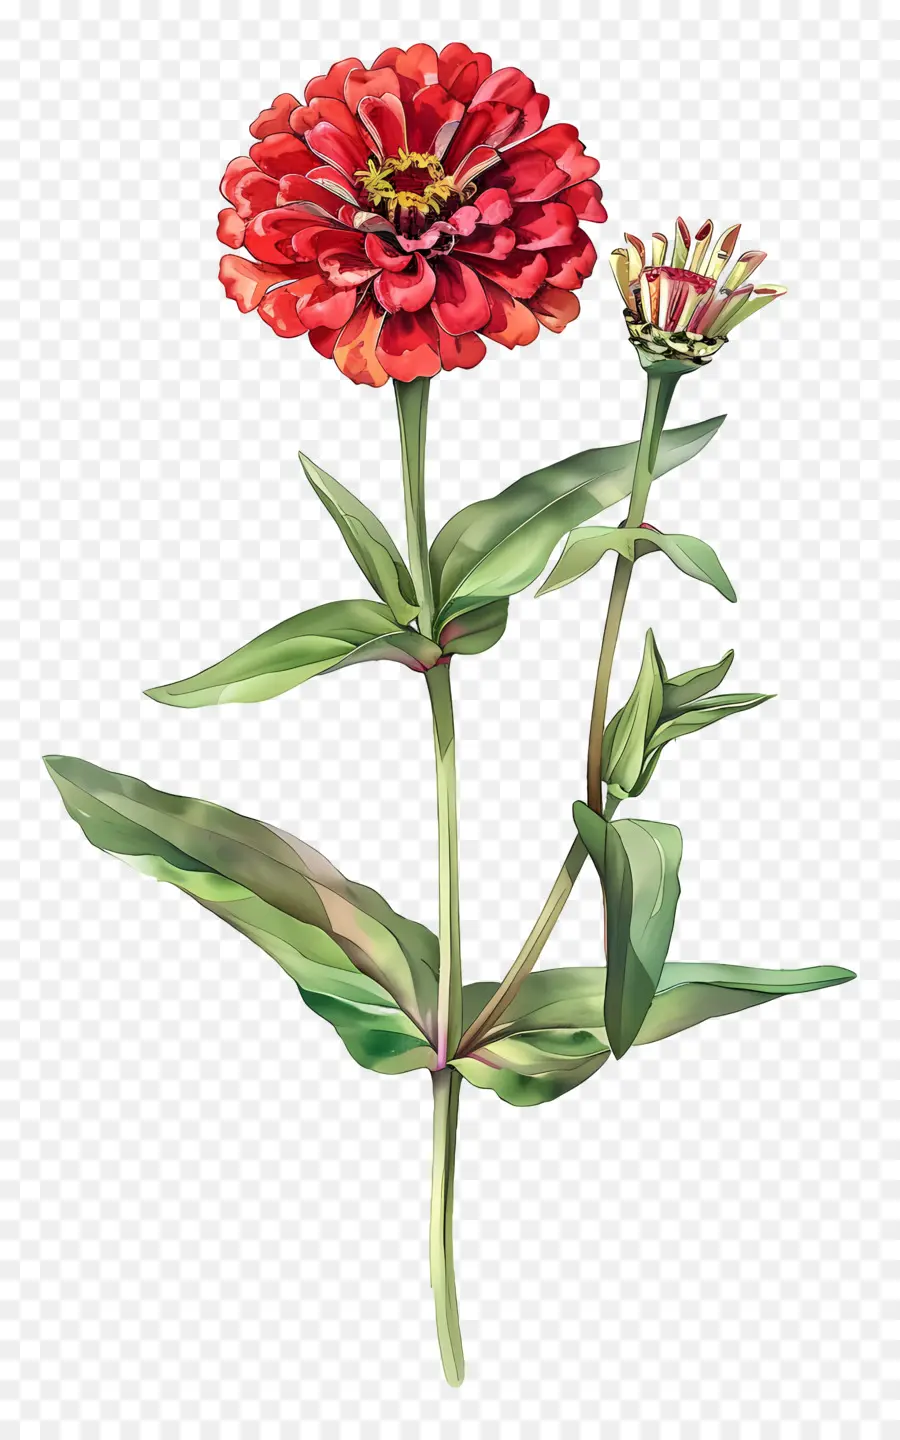 rote Blume - Rote Zinnienblume mit grünen Blättern, lebendige Farbe